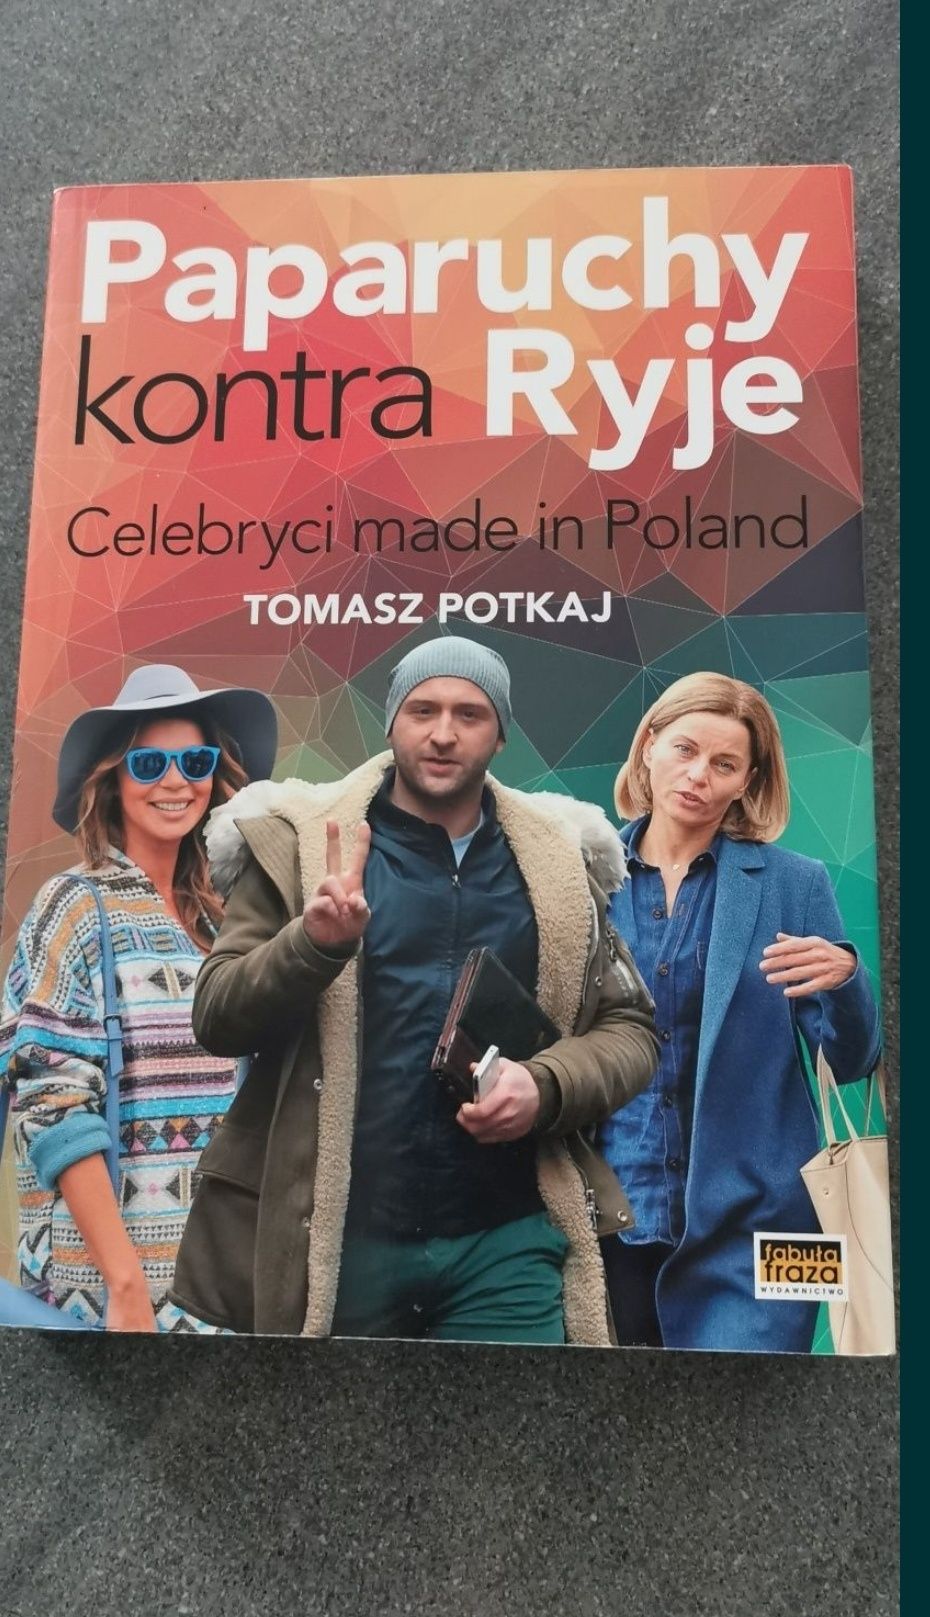 Celebryci made in Poland Paparuchy kontra ryje.Potkaj Tomasz